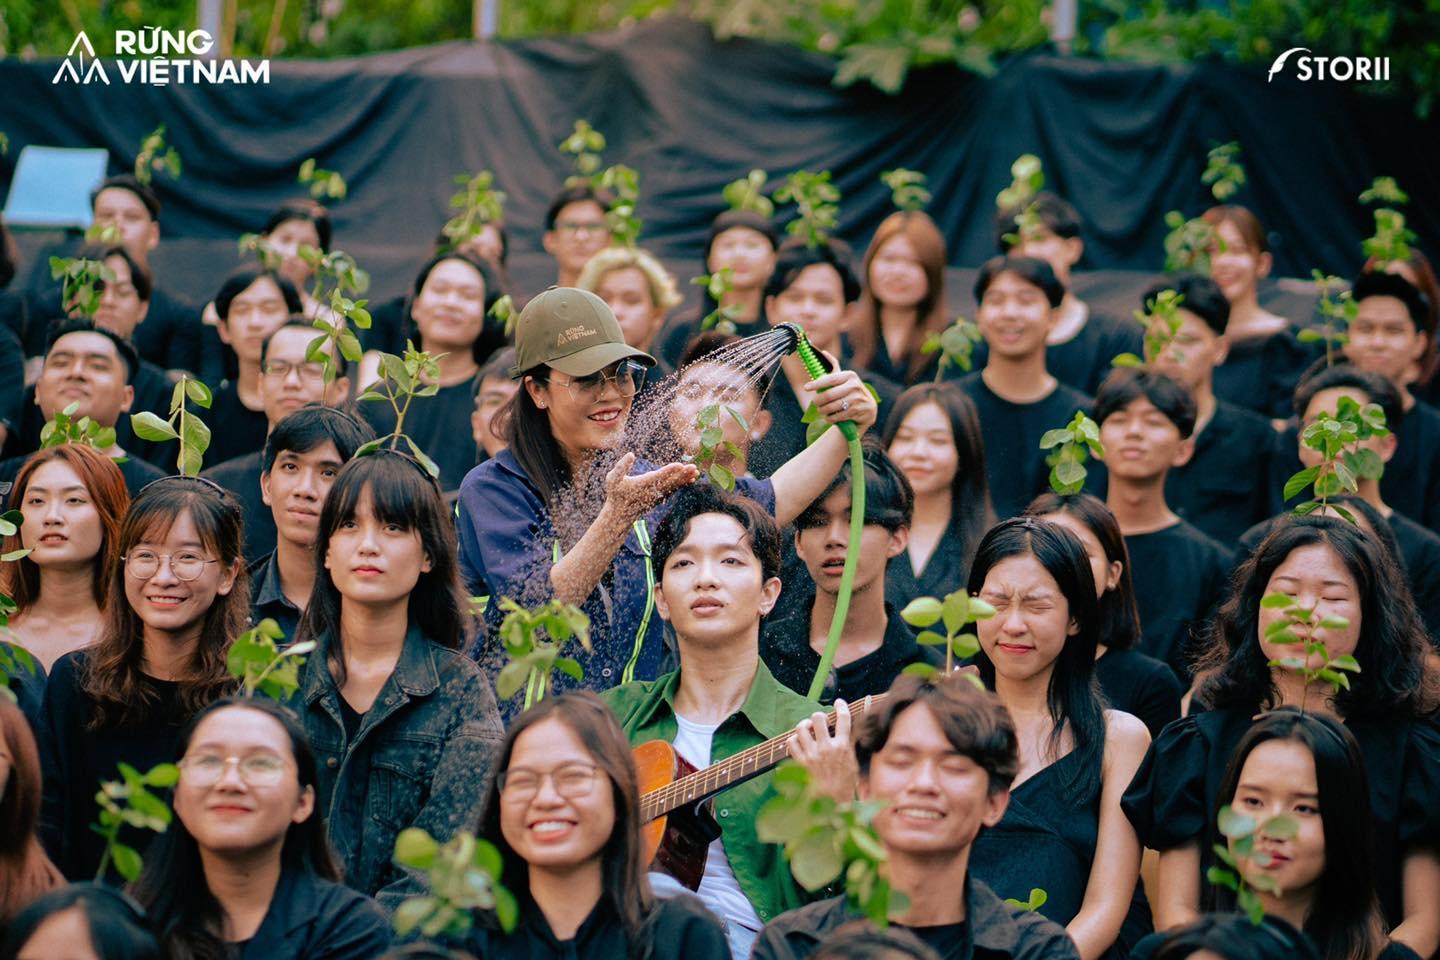 Cảm hứng từ vị thiền sư Hàn Quốc và cánh rừng nuôi dưỡng nguồn sáng tạo cho người trẻ Việt - Ảnh 3.